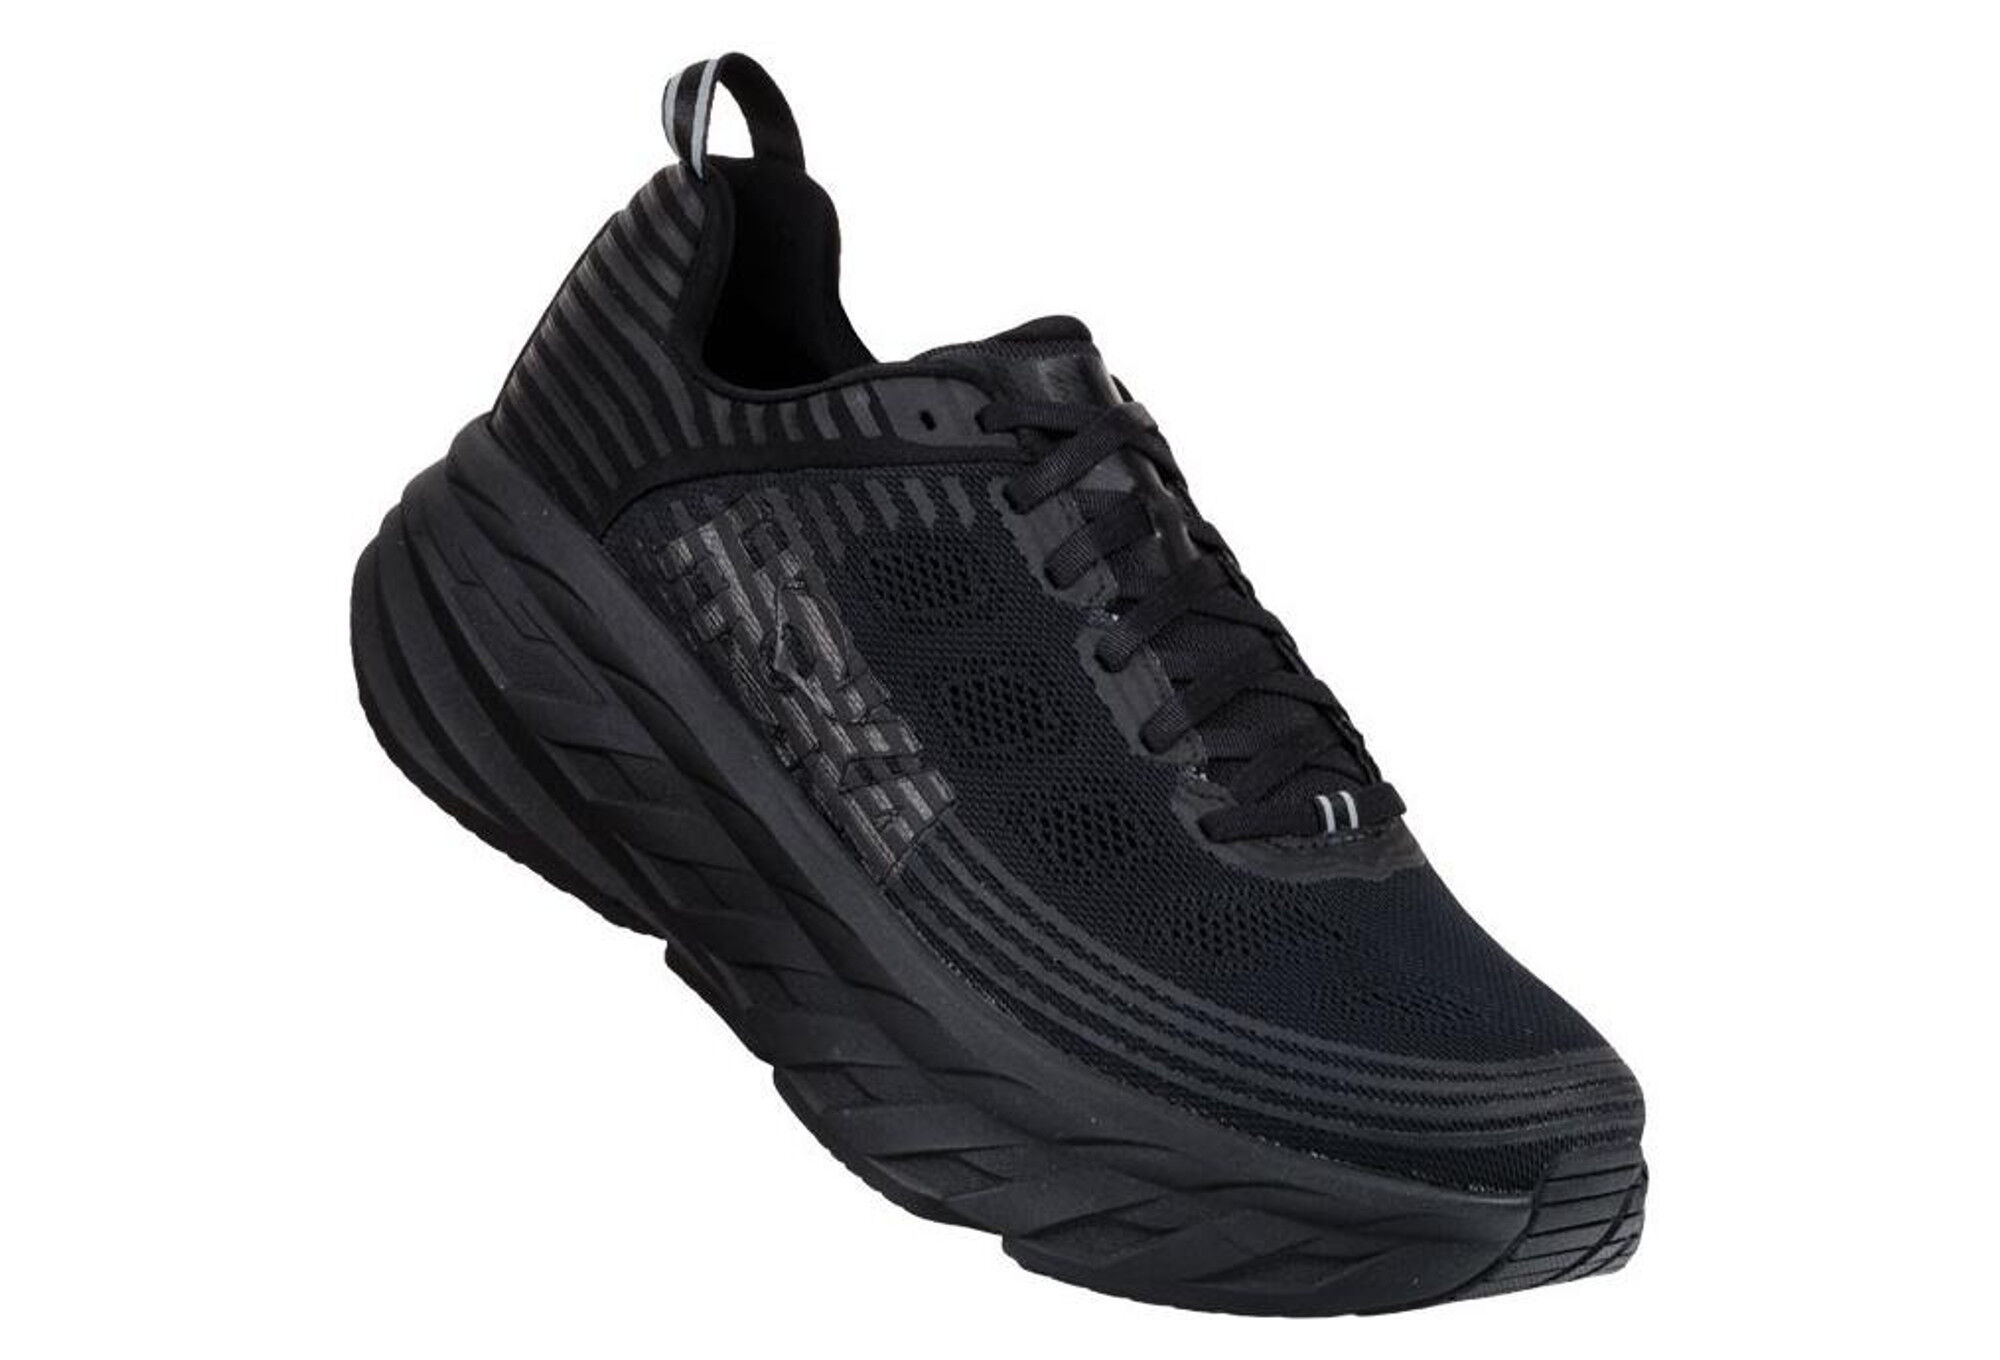 Hoka - Bondi 6 - Running shoes - Men's